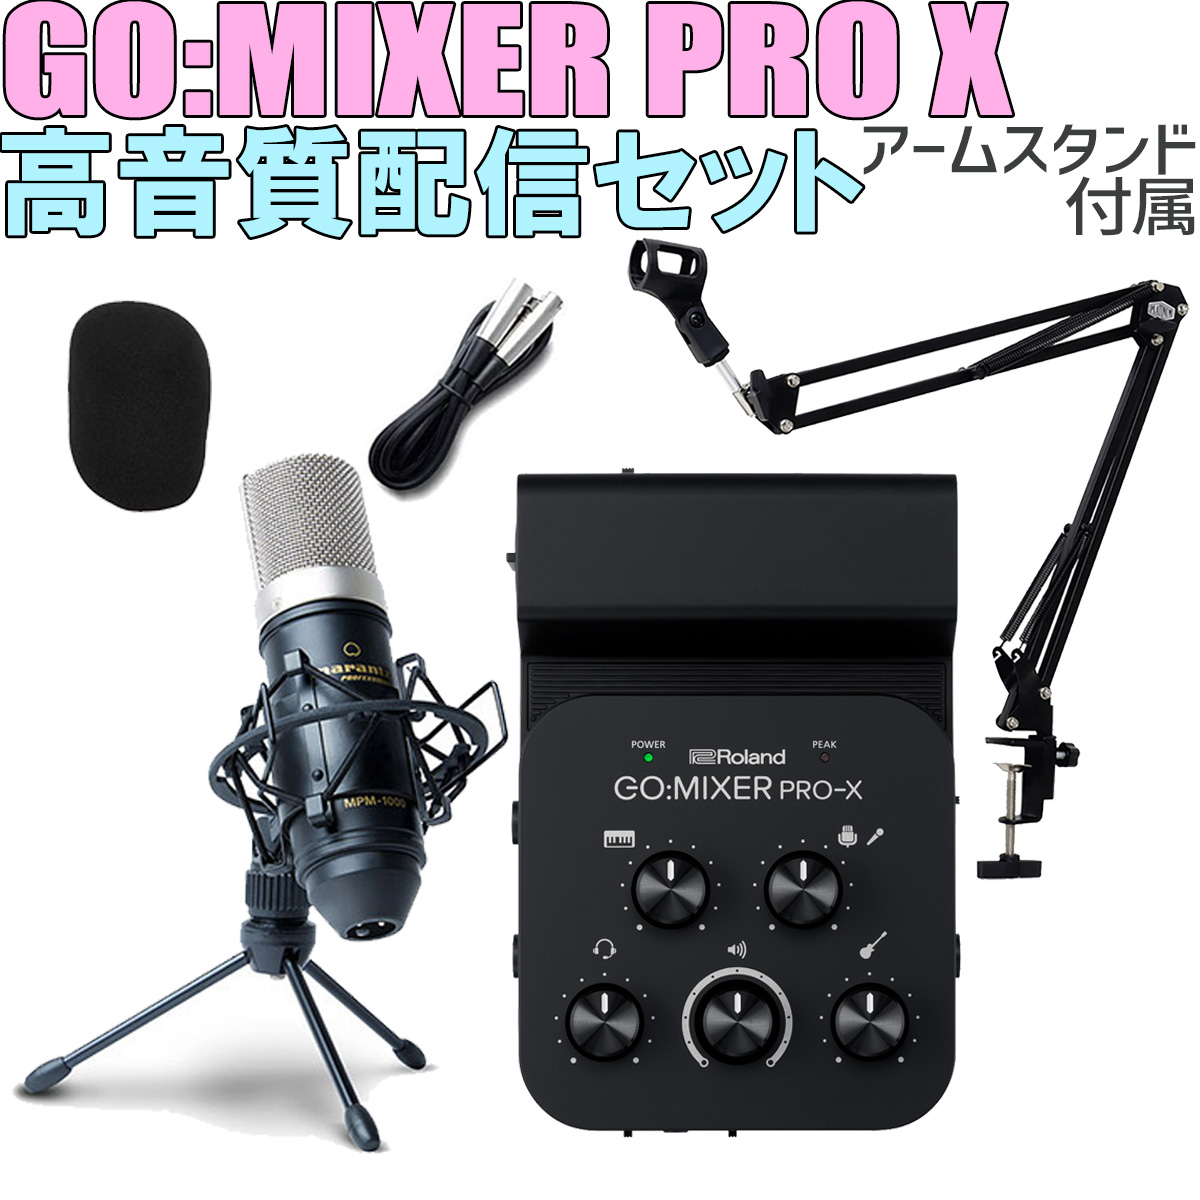 Roland GO:MIXER PRO-X MPM-1000J 高音質配信セット アームスタンド付属 スマホ用インターフェース 【ローランド